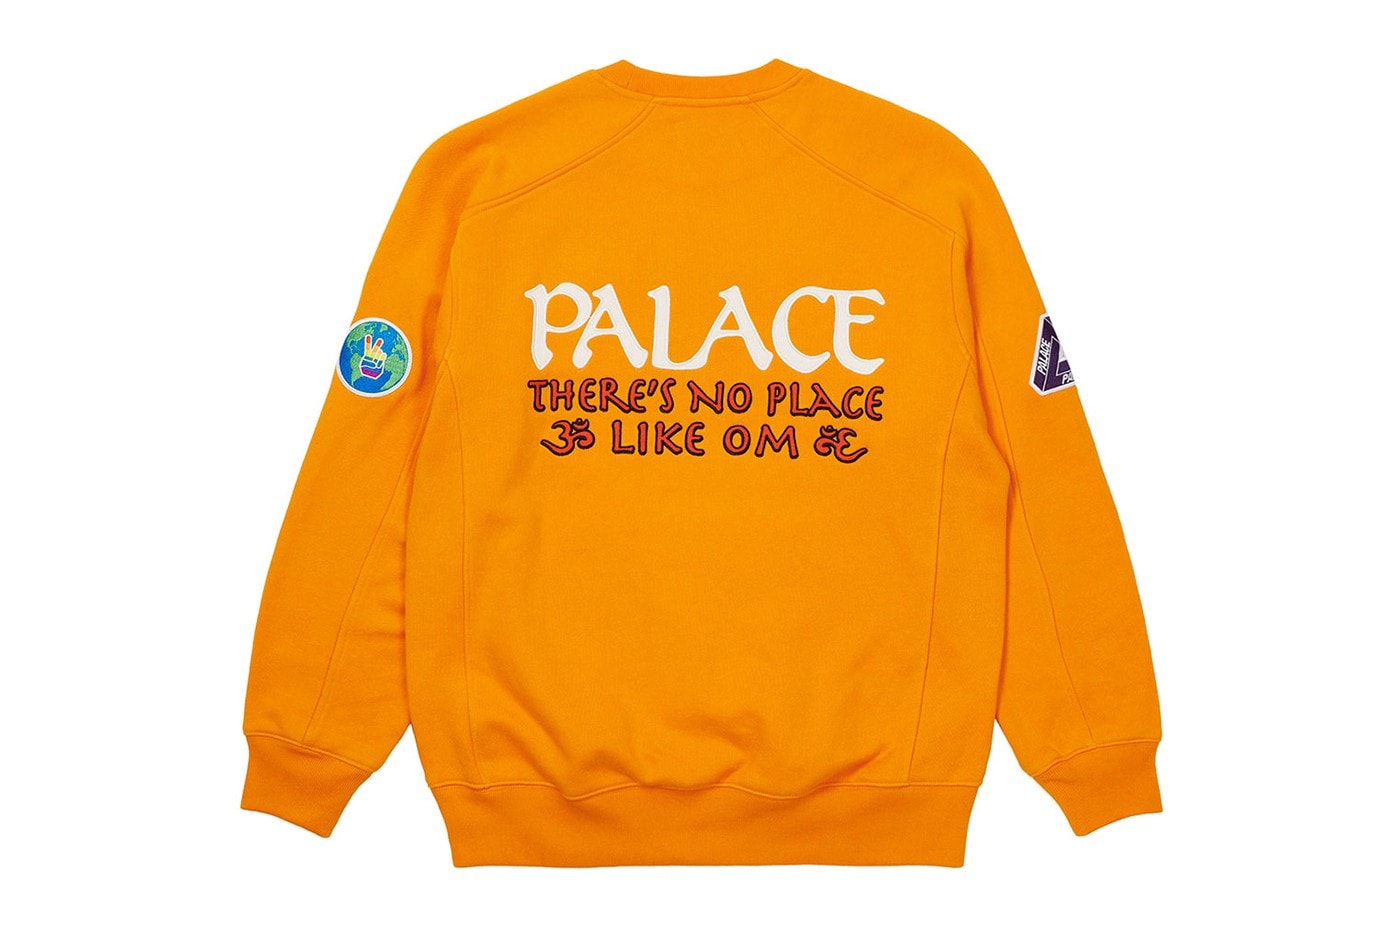 Palace Skateboards 2021 夏季運動套裝及外套系列